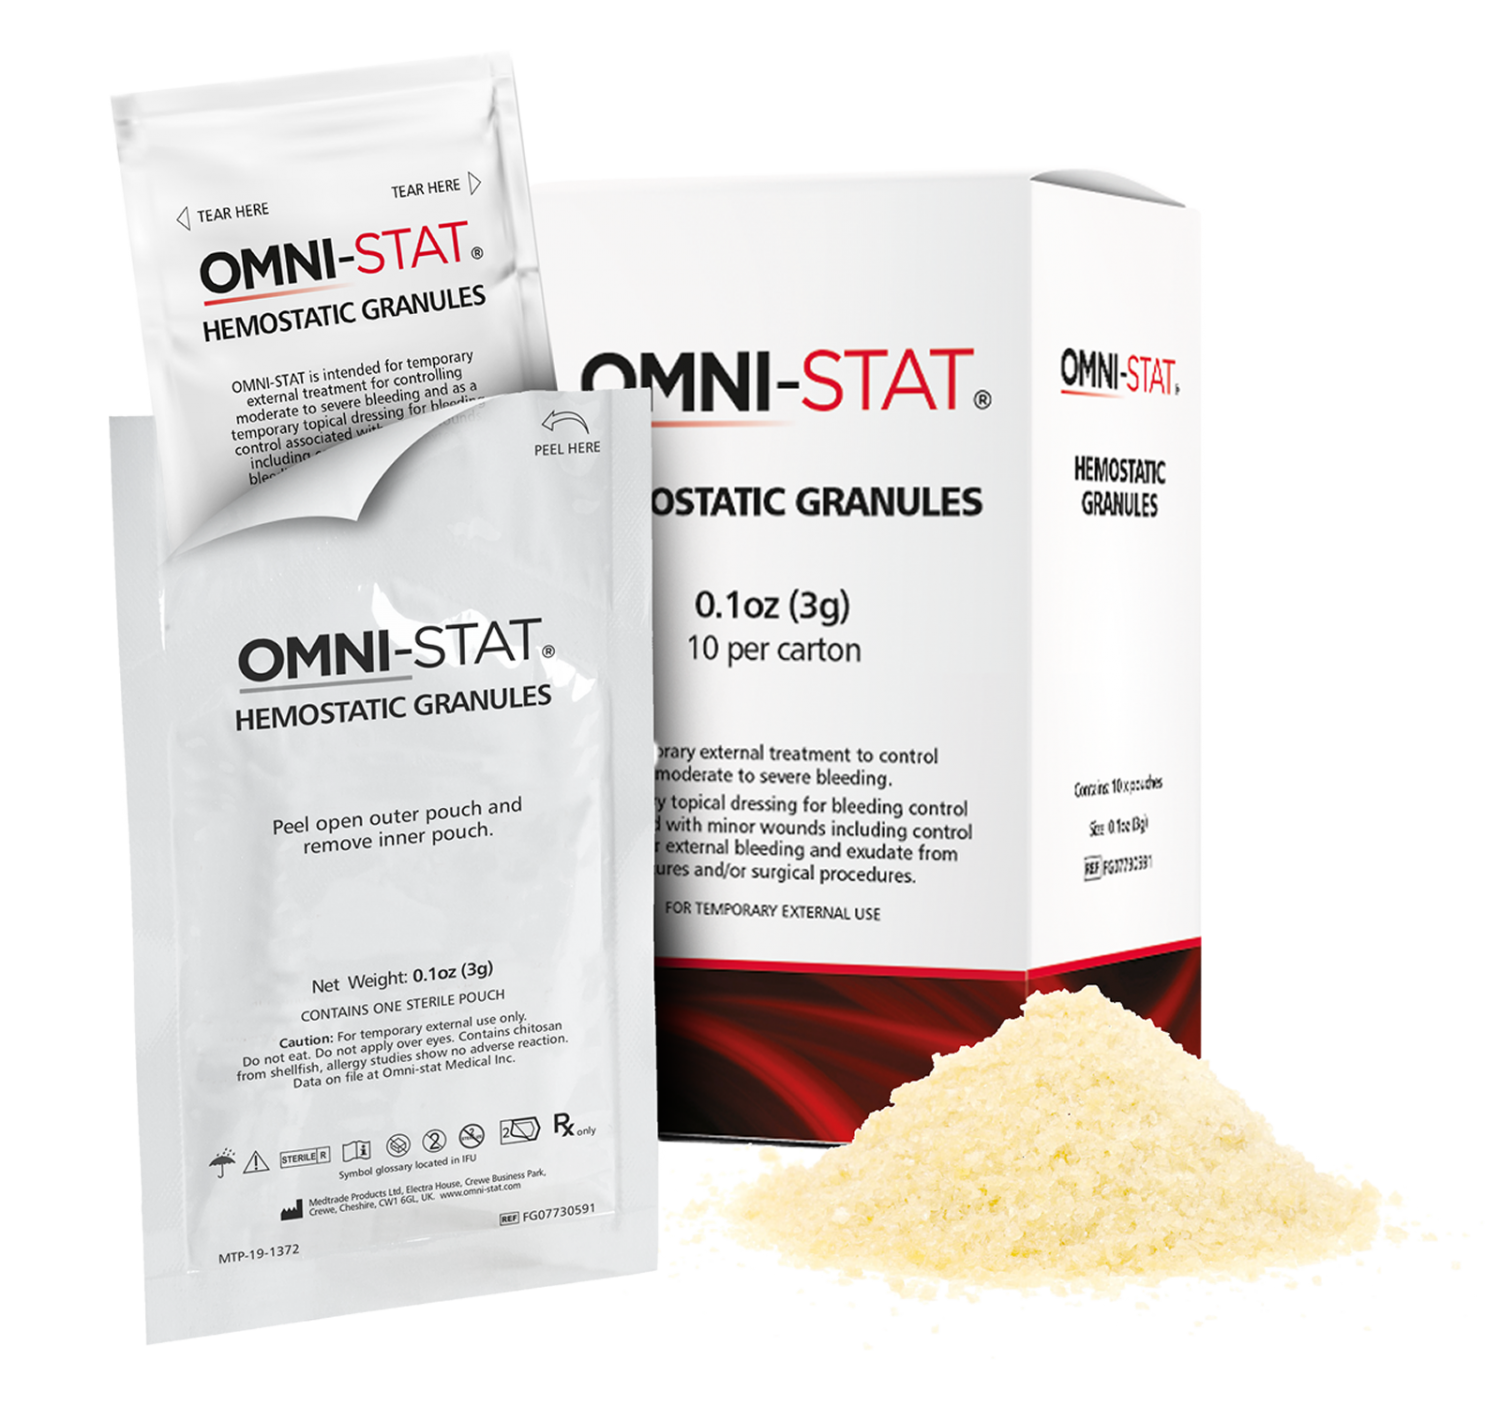 OMNI-STAT® 3(g) Hemostatic Granules